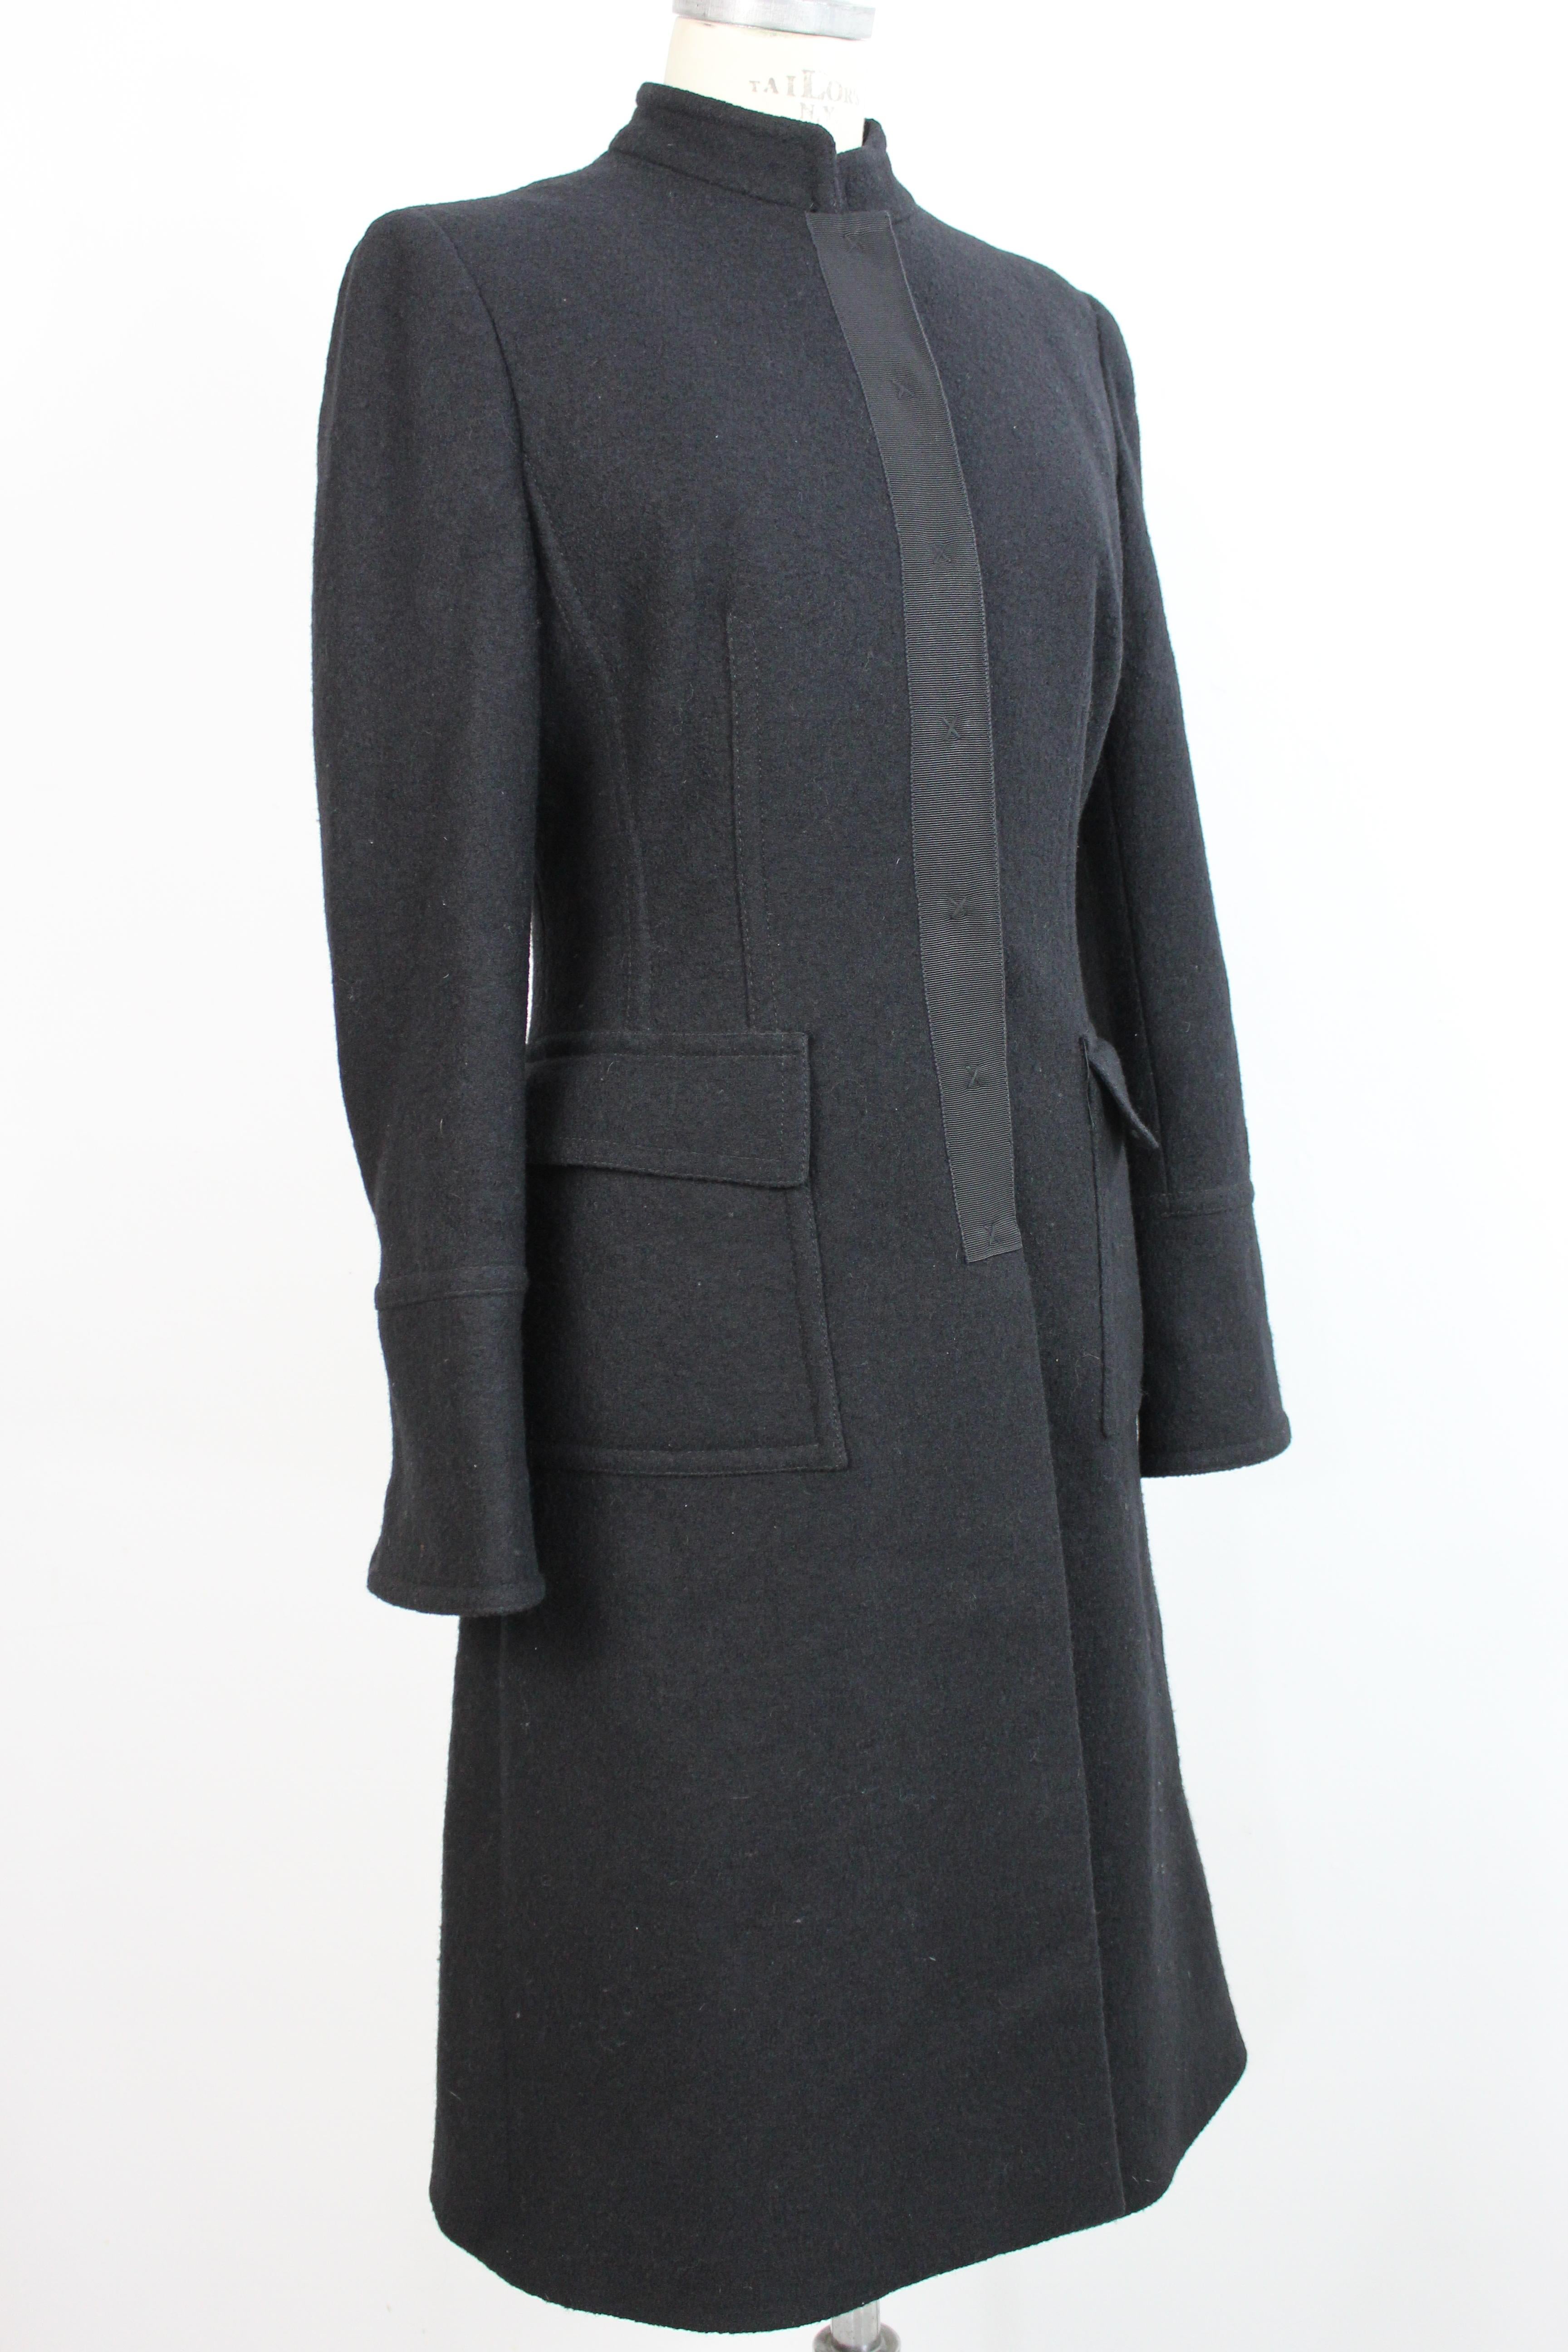 Women's 2000s Alberta Ferretti Black Wool Long Coat Hidden Buttons